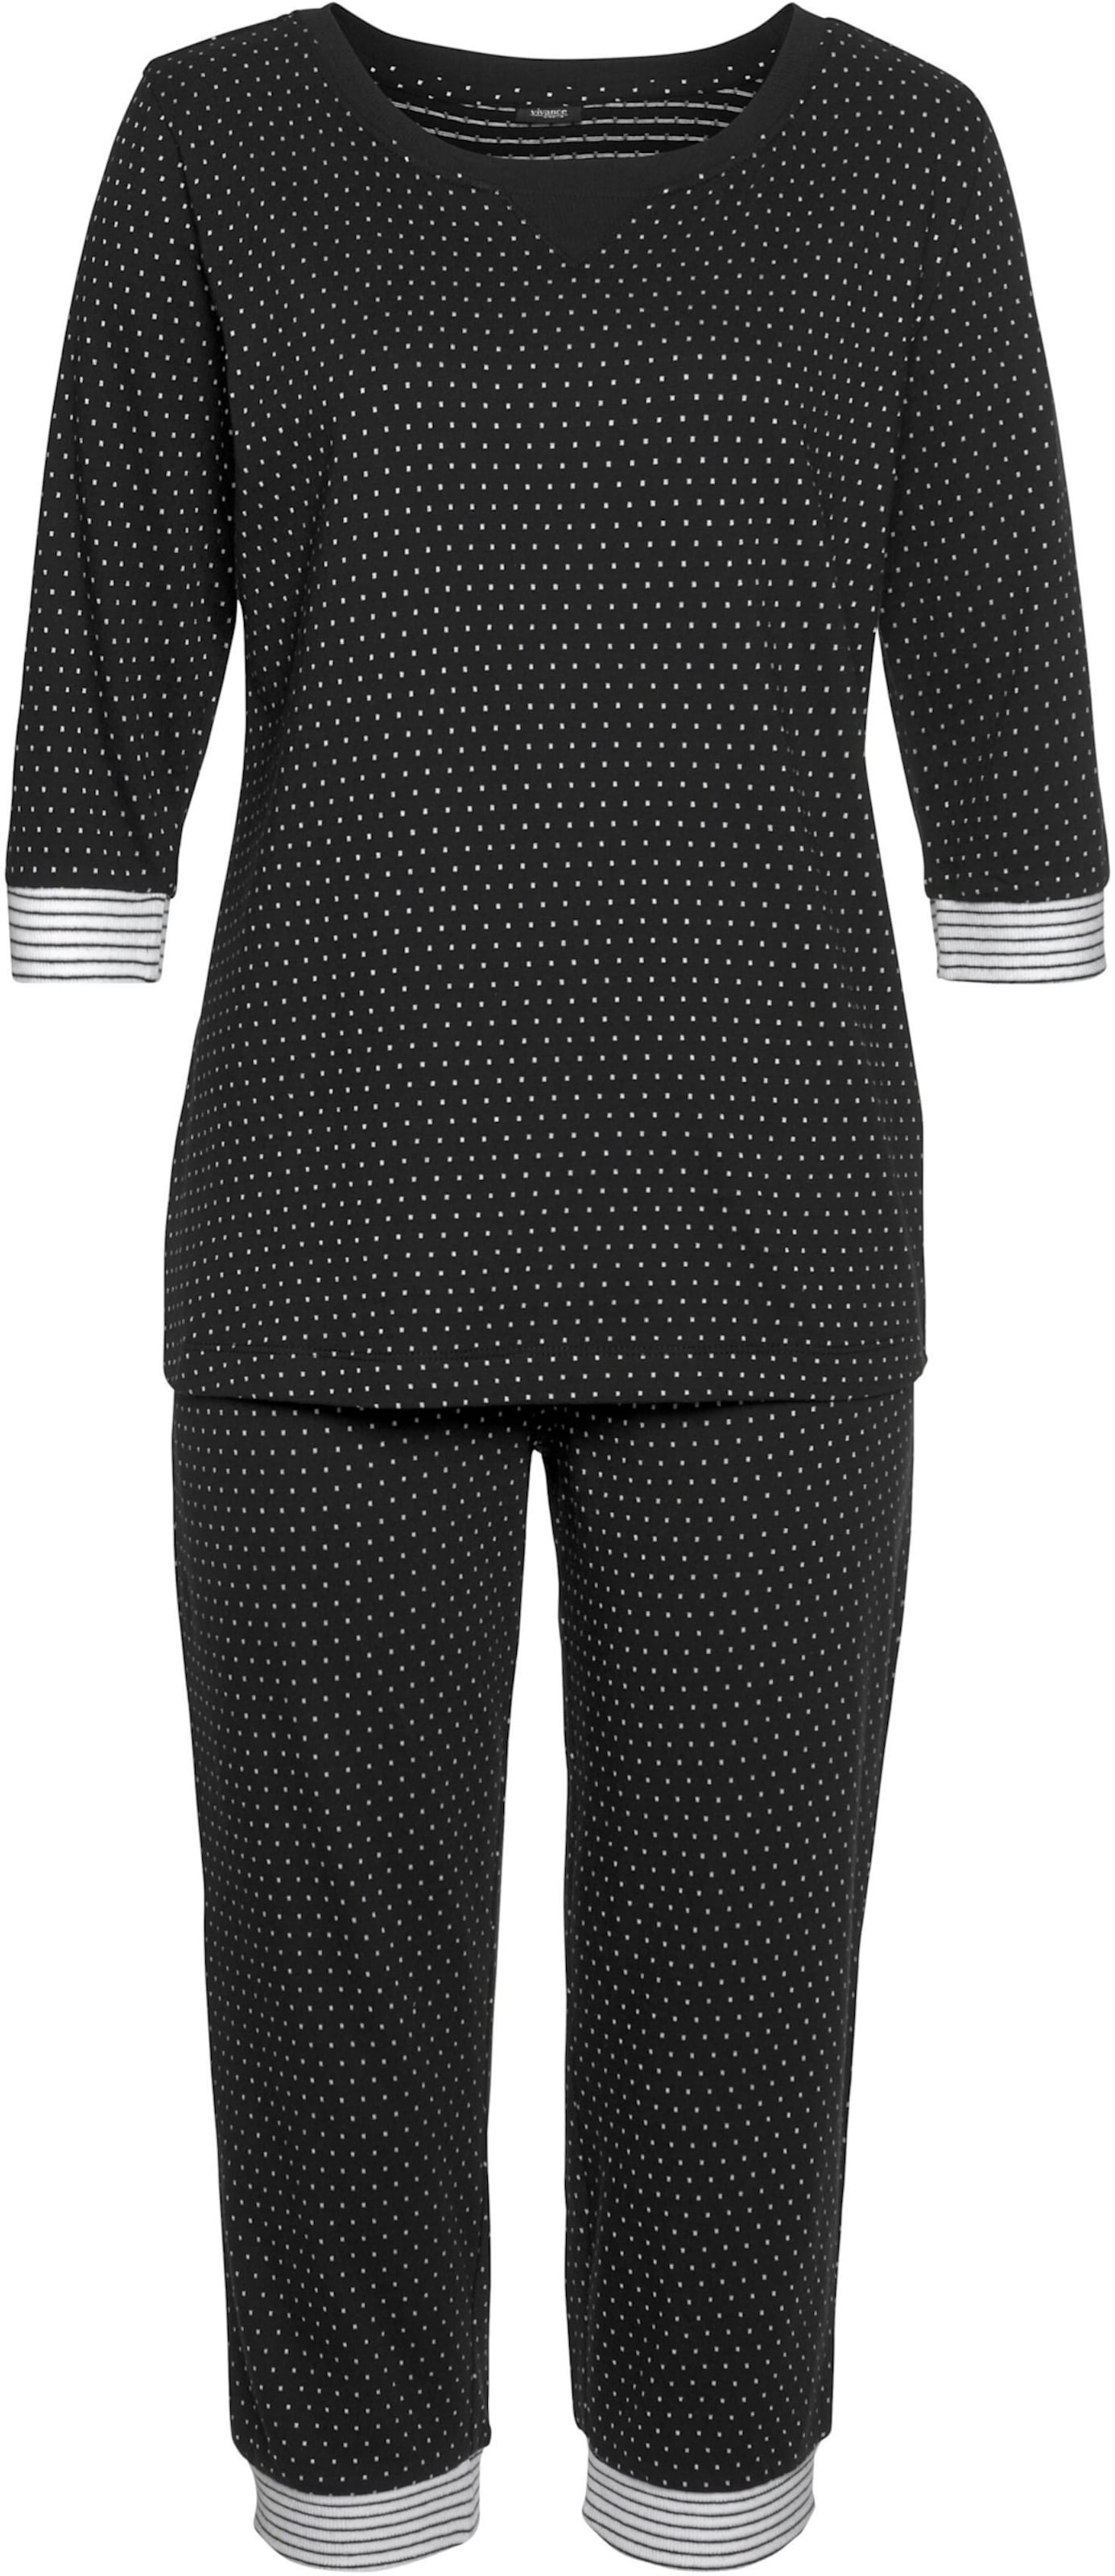 Capri-Pyjama in schwarz-gepunktet von Vivance Dreams